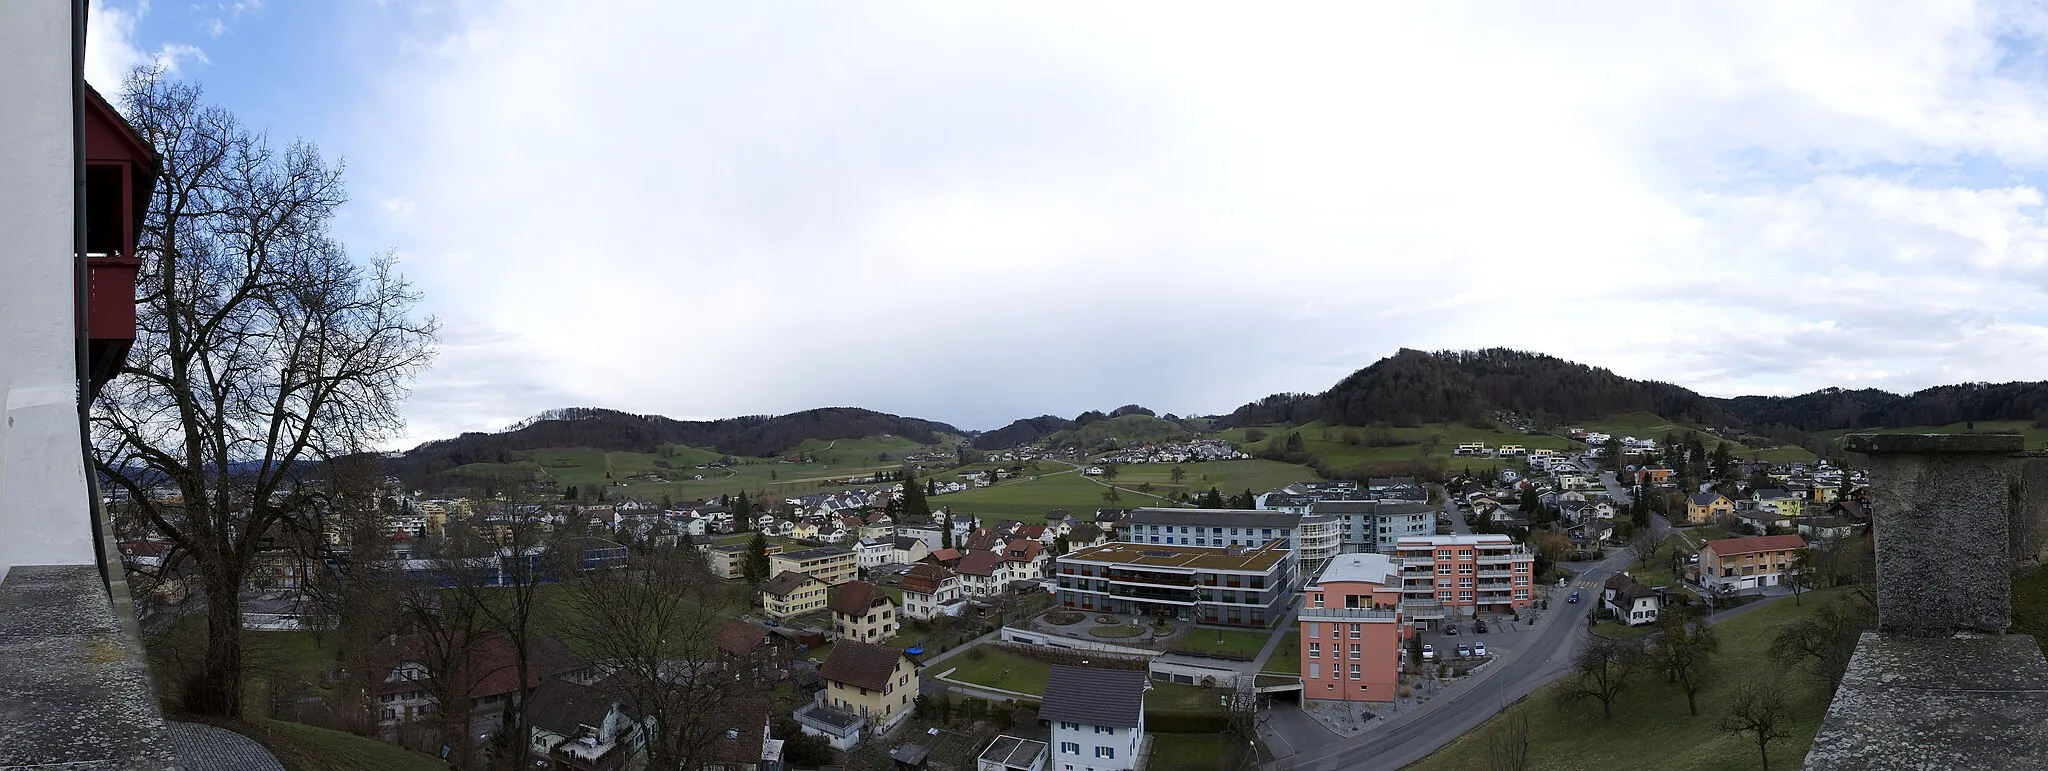 Photo showing: Blick auf einen Teil von Reiden und dem Weiler Reidermoos hinten im Bild. 180°-Panorama